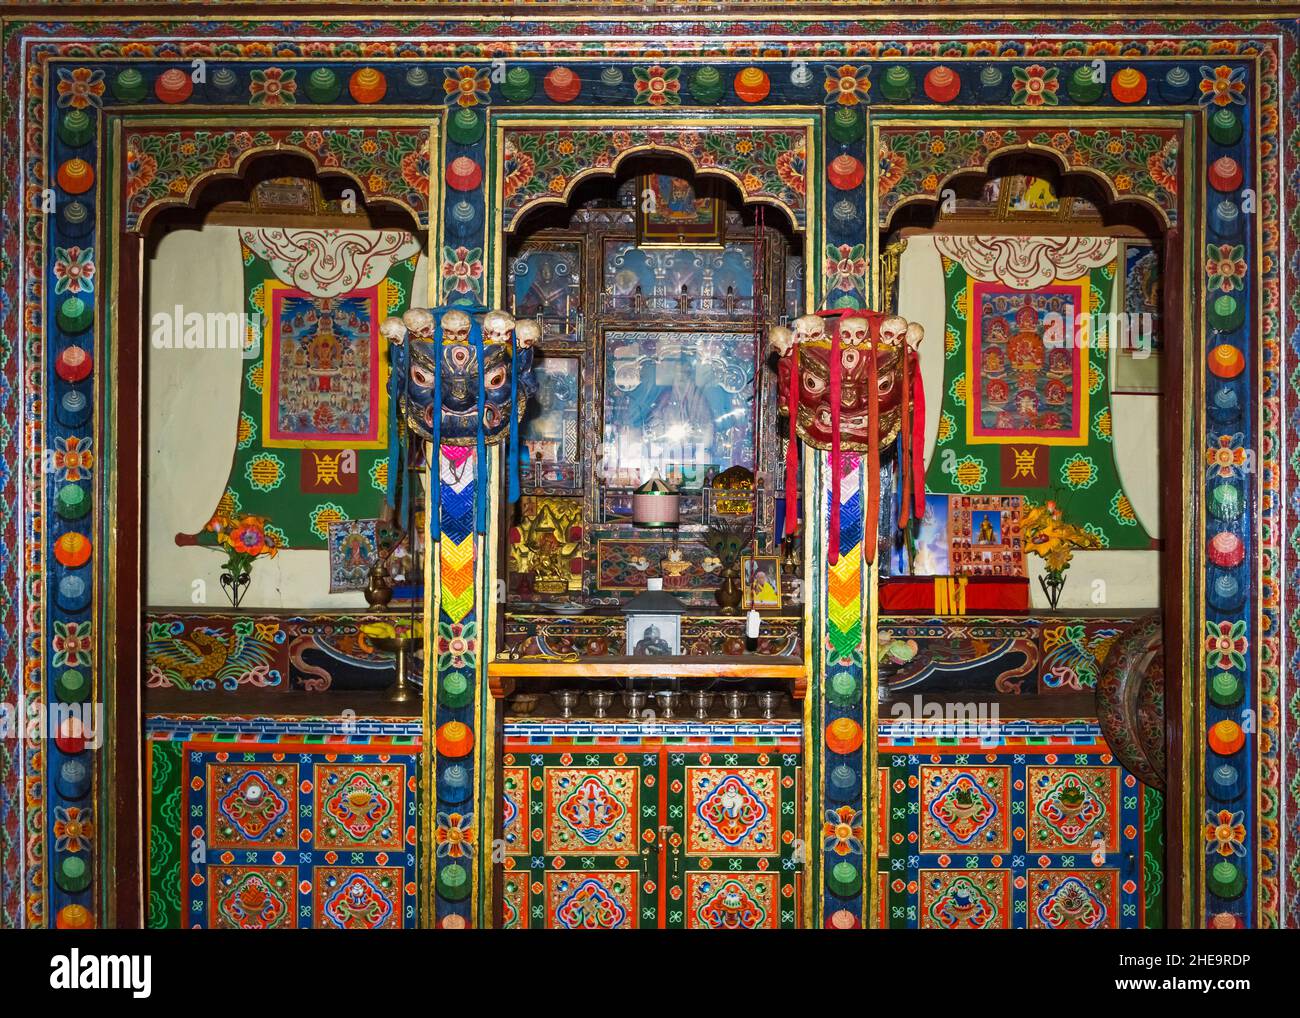 Sanctuaire dans une salle de prière à l'intérieur d'une maison bhoutanaise, Haa, Bhoutan Banque D'Images